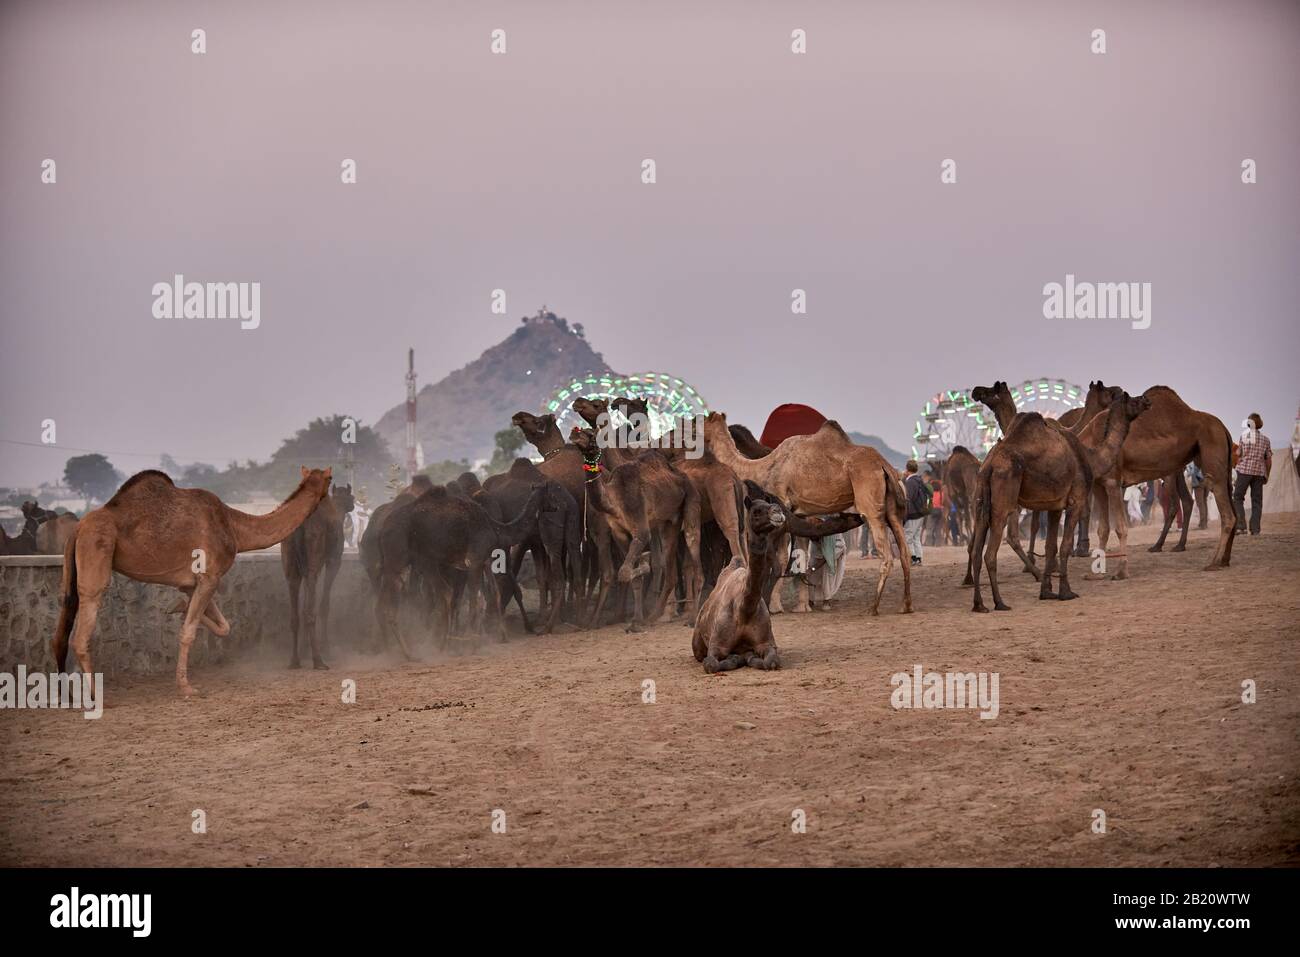 Los camellos delante de la rueda de la fortuna, el recinto ferial en la feria de ganado y camellos Pushkar Mela, Pushkar, Rajastán, India Foto de stock